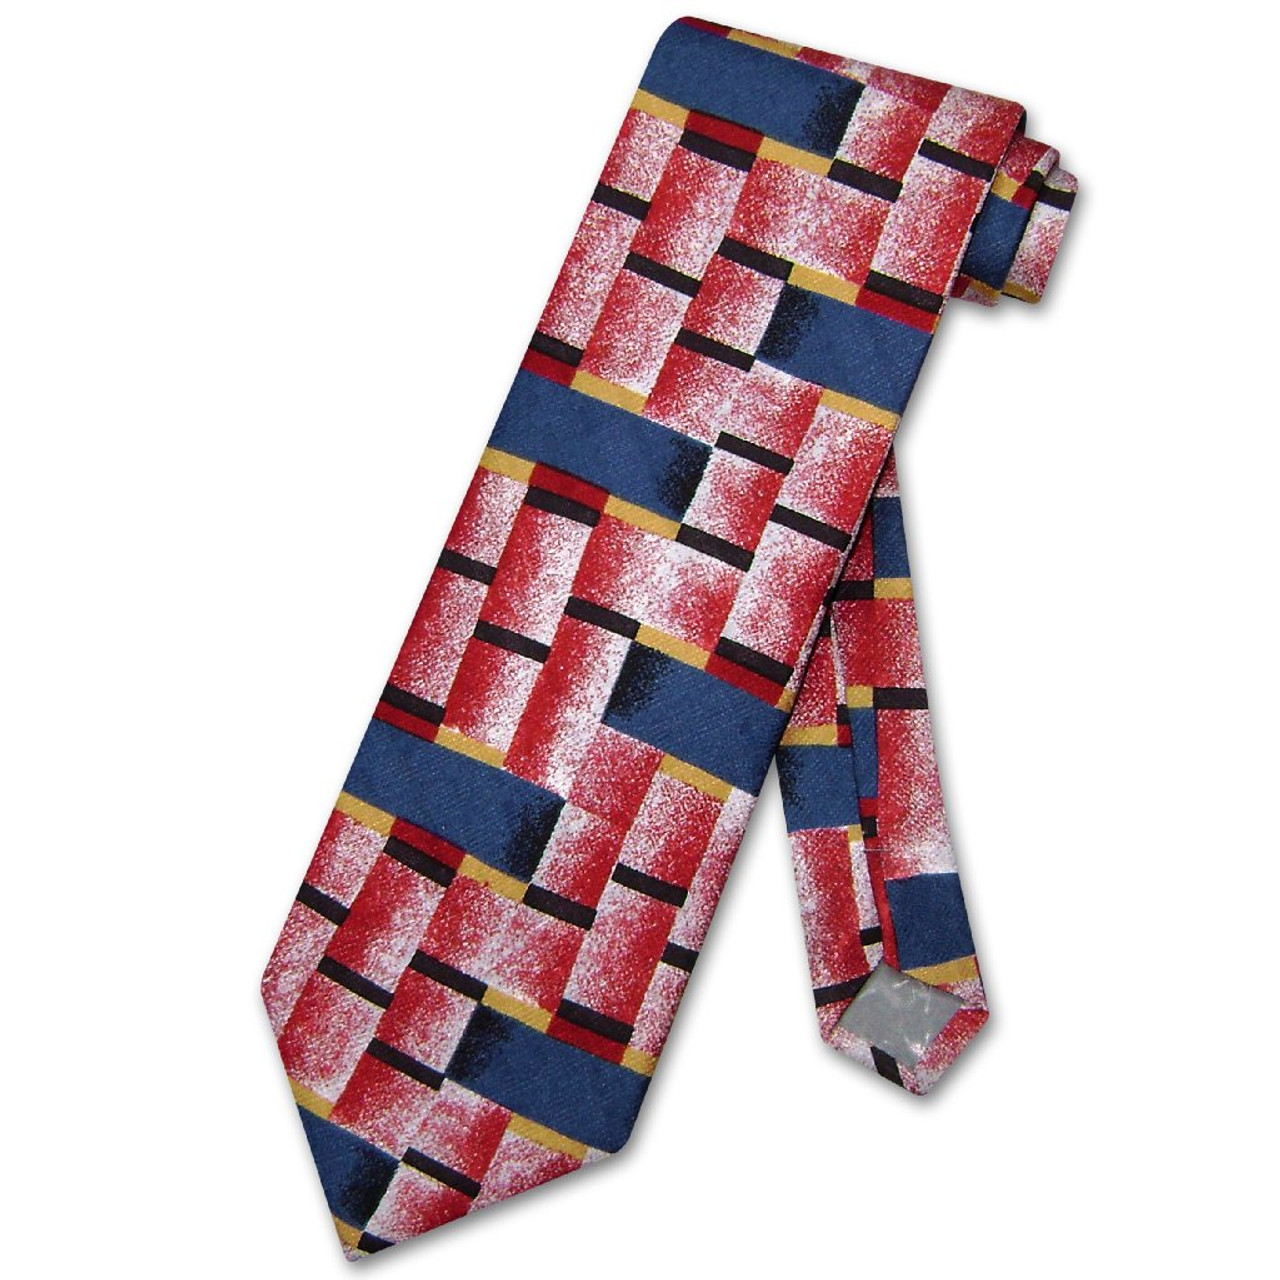 Antonio Ricci Silk NeckTie Made in Italy Design Mens Neck Tie #3121-5